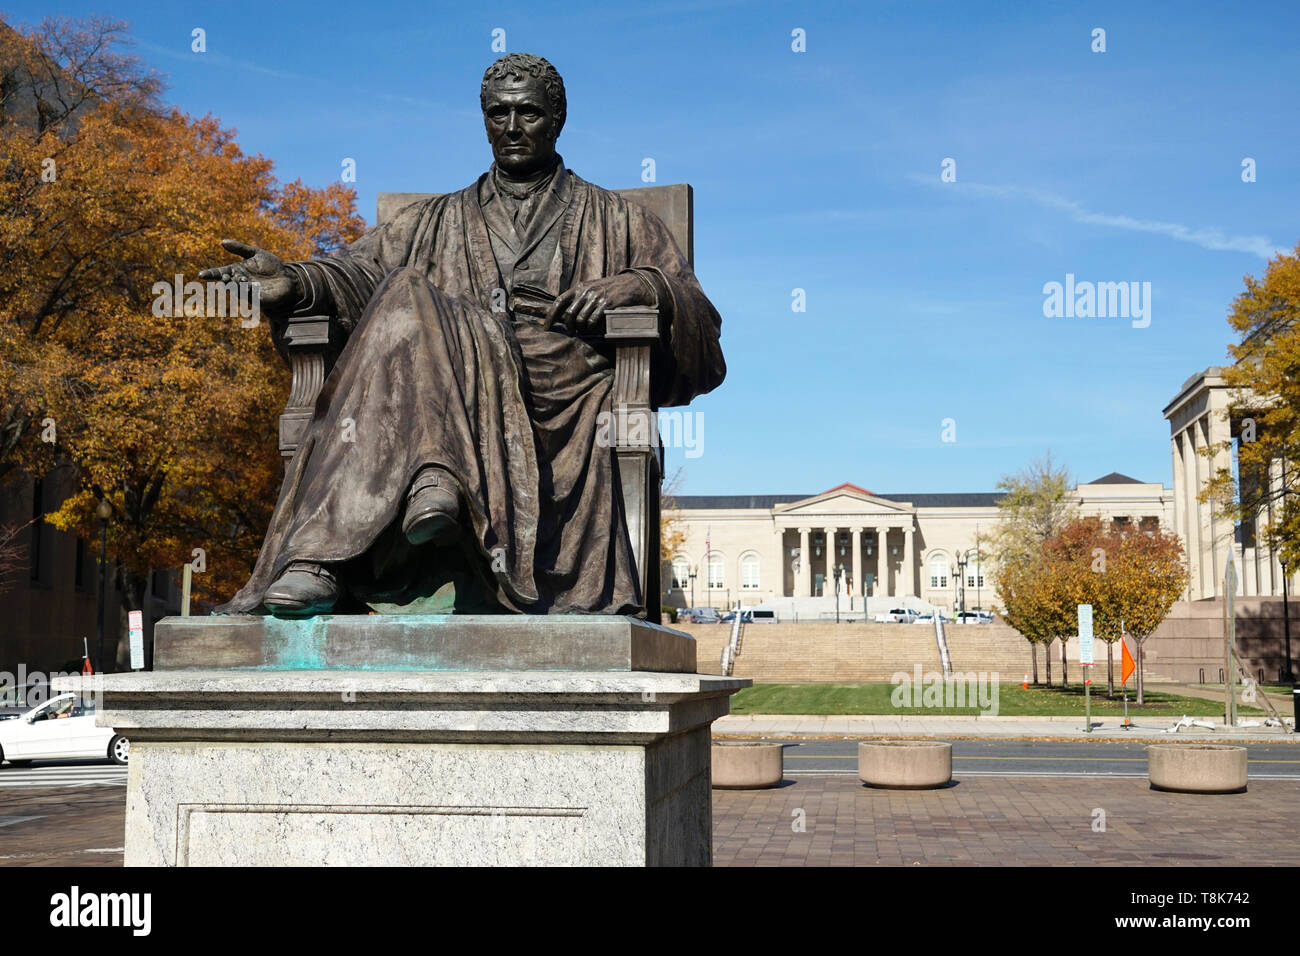 La statue du juge en chef John Marshall par William Wetmore Story à John Marshall Park près de l'appareil judiciaire Square.Washington D.C.USA Banque D'Images